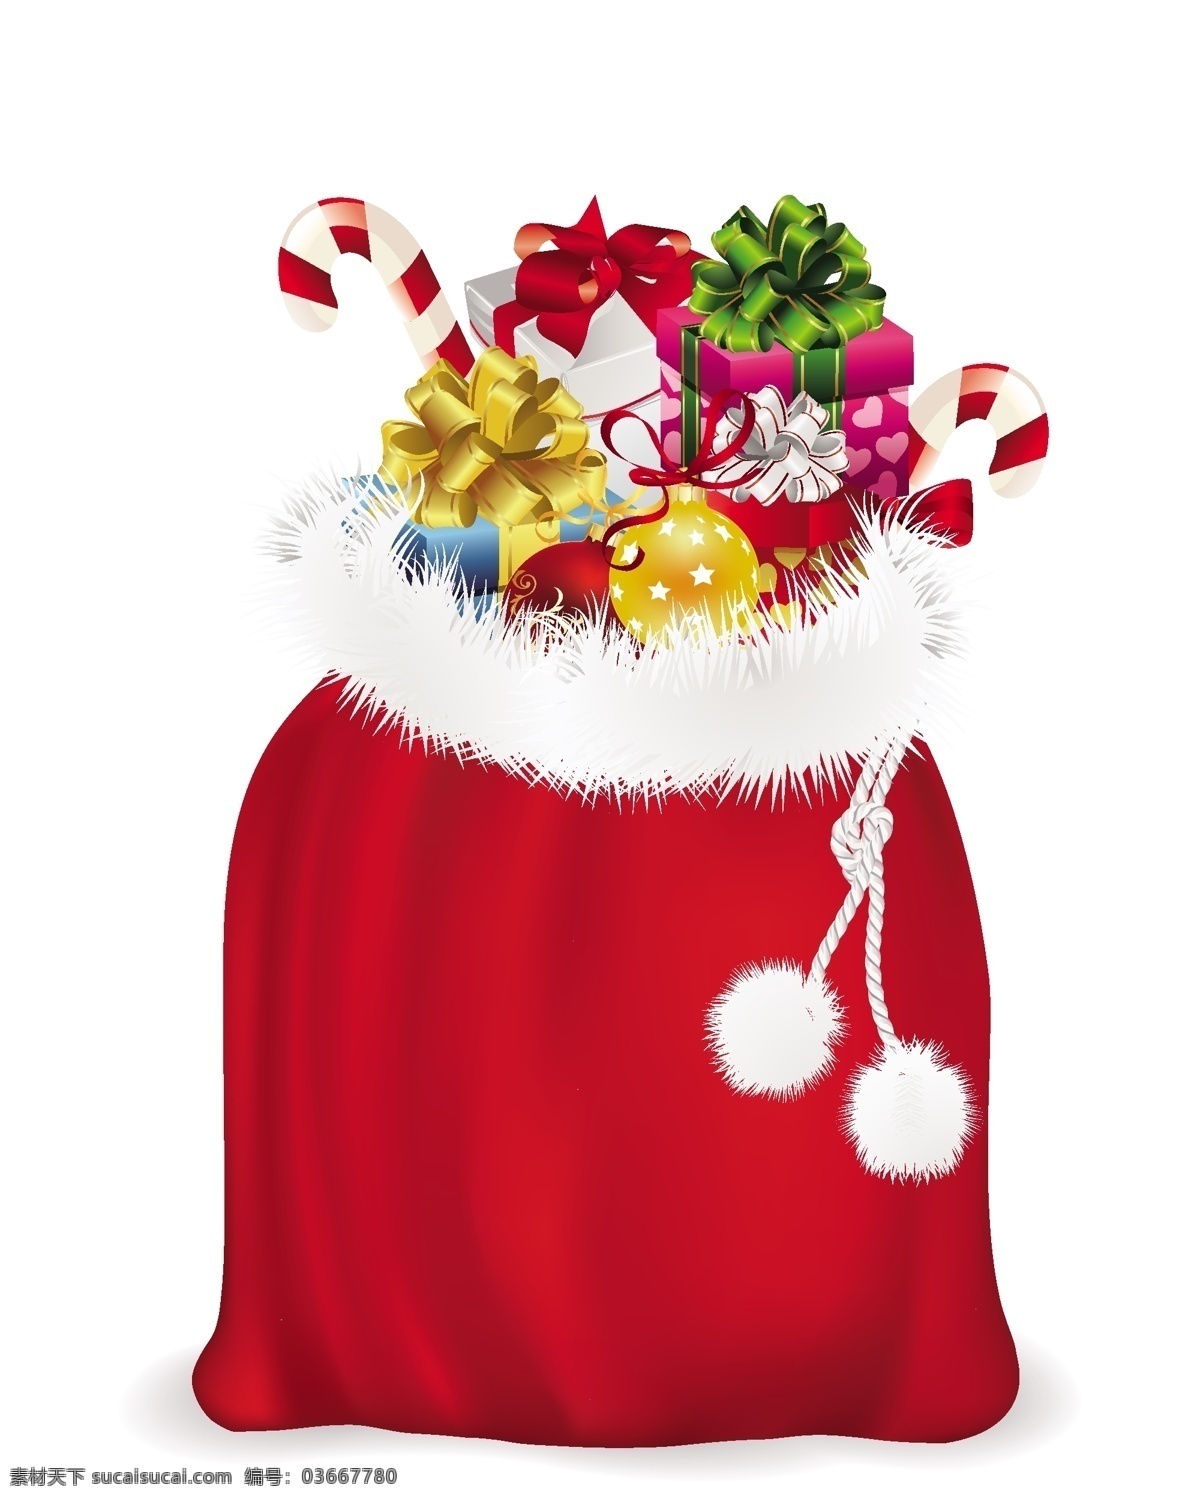 圣 克劳斯 礼品袋 向量 包 彩花 节 卡通形象 礼品 礼品盒 毛绒 球 雪 珠宝 圣克劳斯 手杖 矢量图 矢量人物